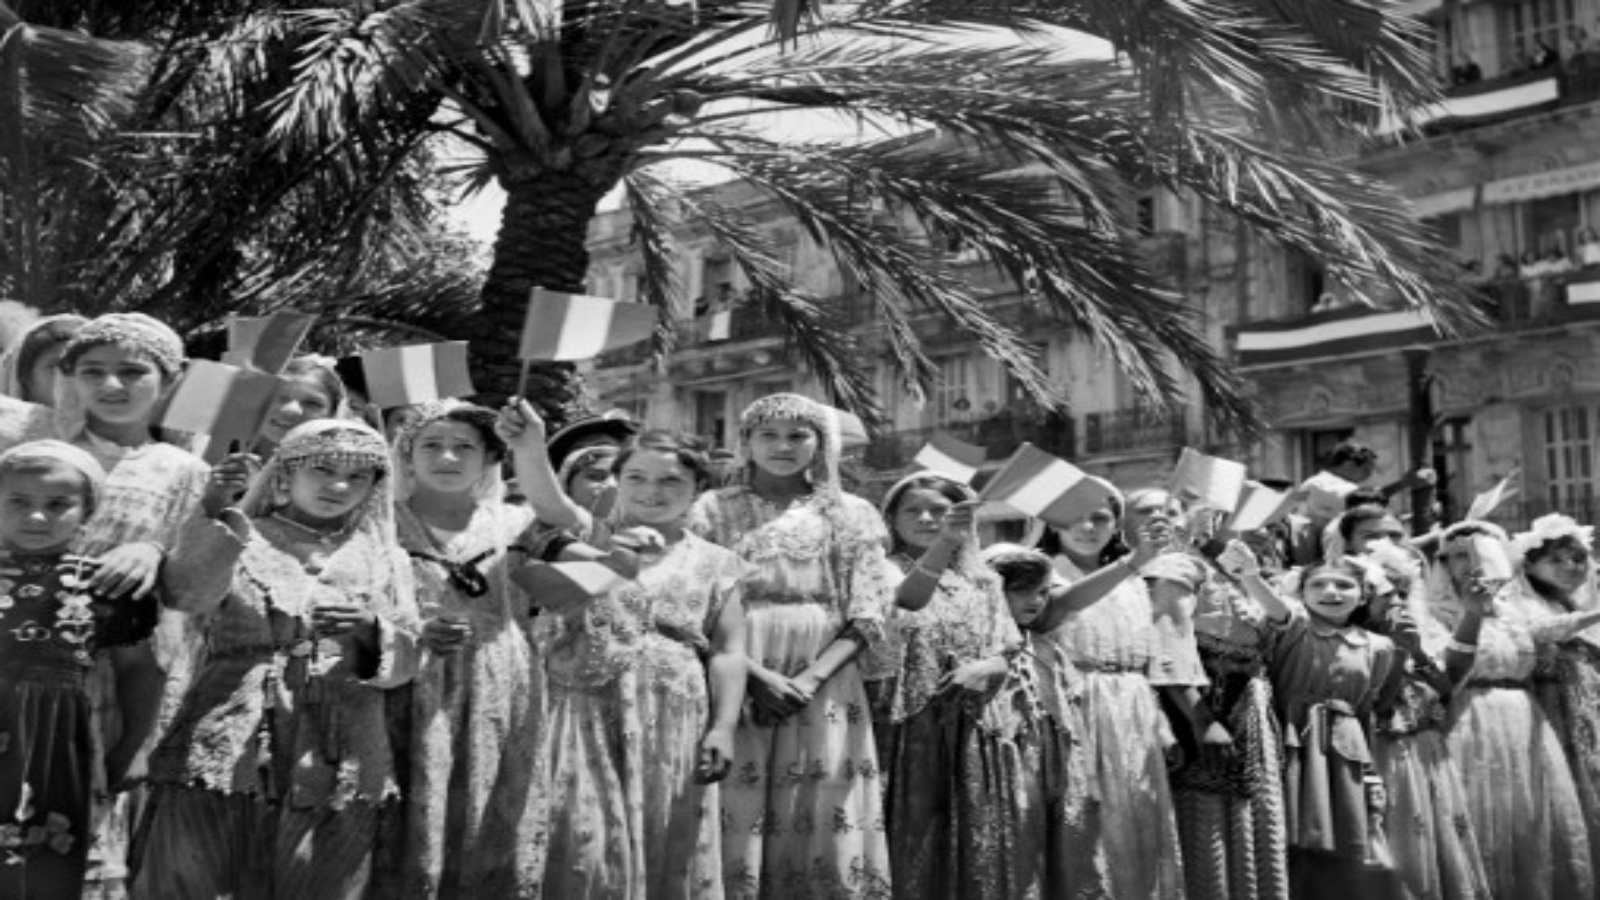 صورة التقطت في 1 يونيو 1949 فتيات جزائريات يرتدين فساتين تقليدية يلوحن بالأعلام الفرنسية خلال احتفال عام في الجزائر العاصمة.